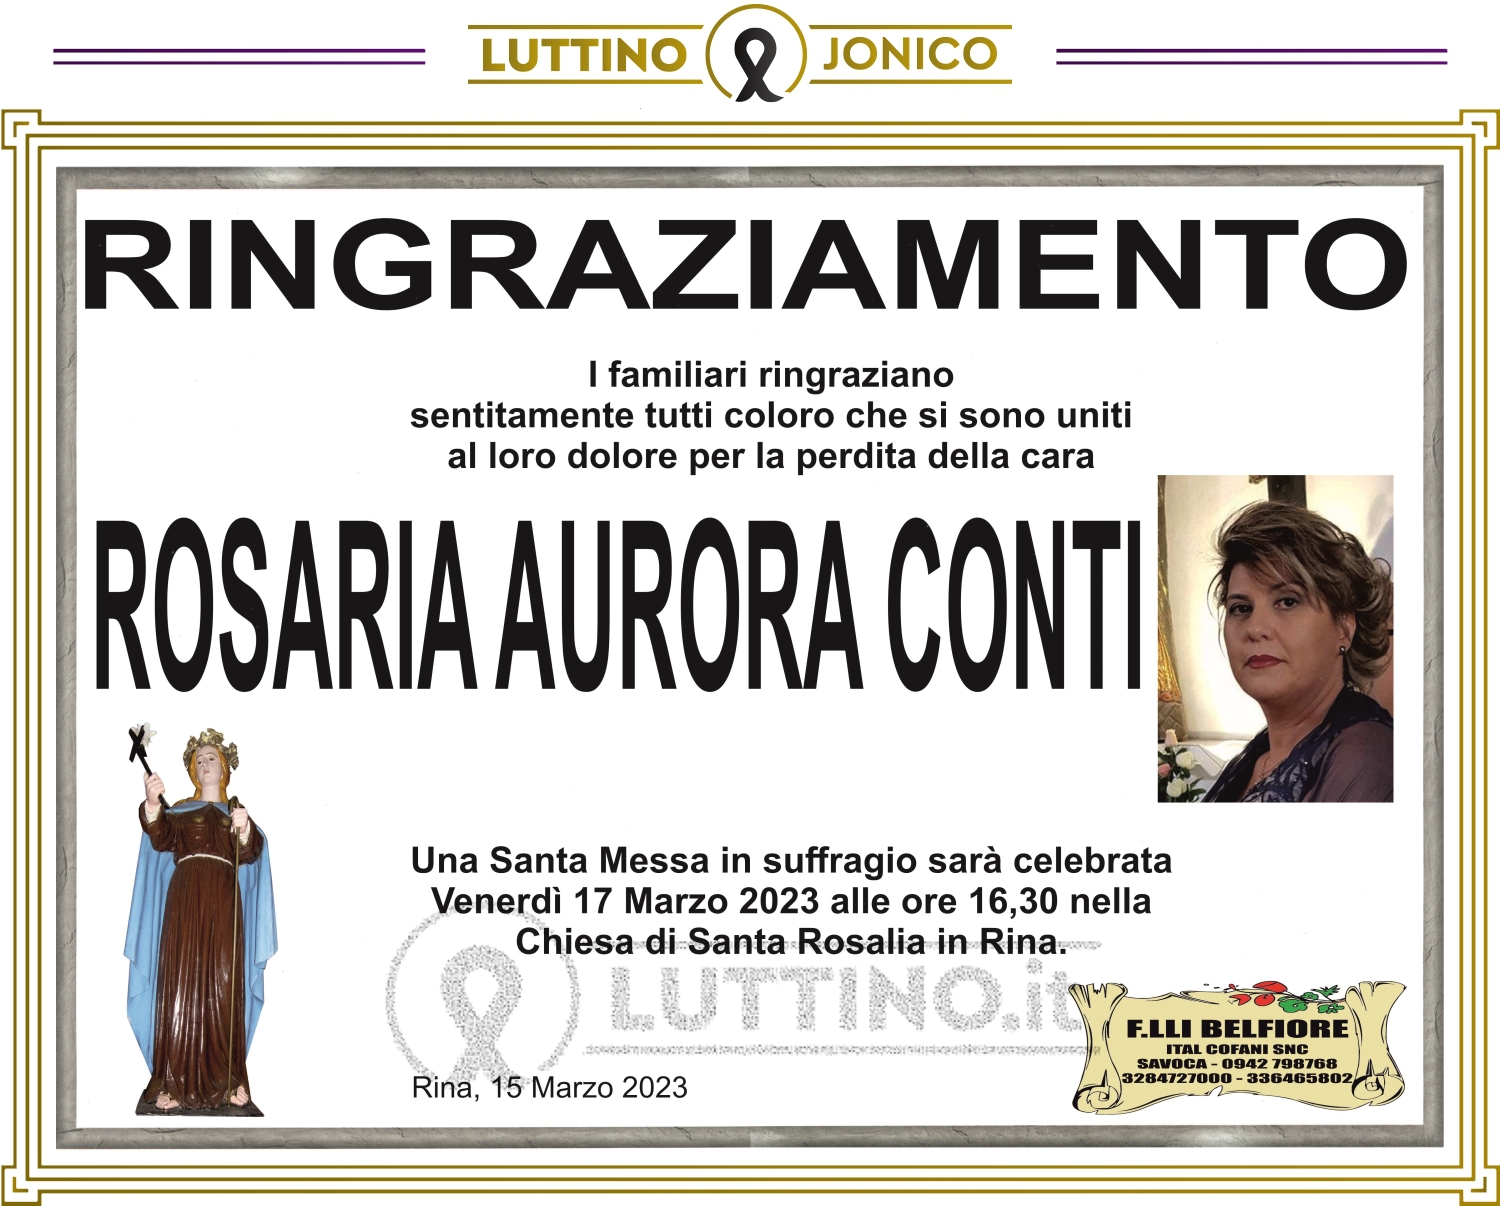 Rosaria Aurora Conti